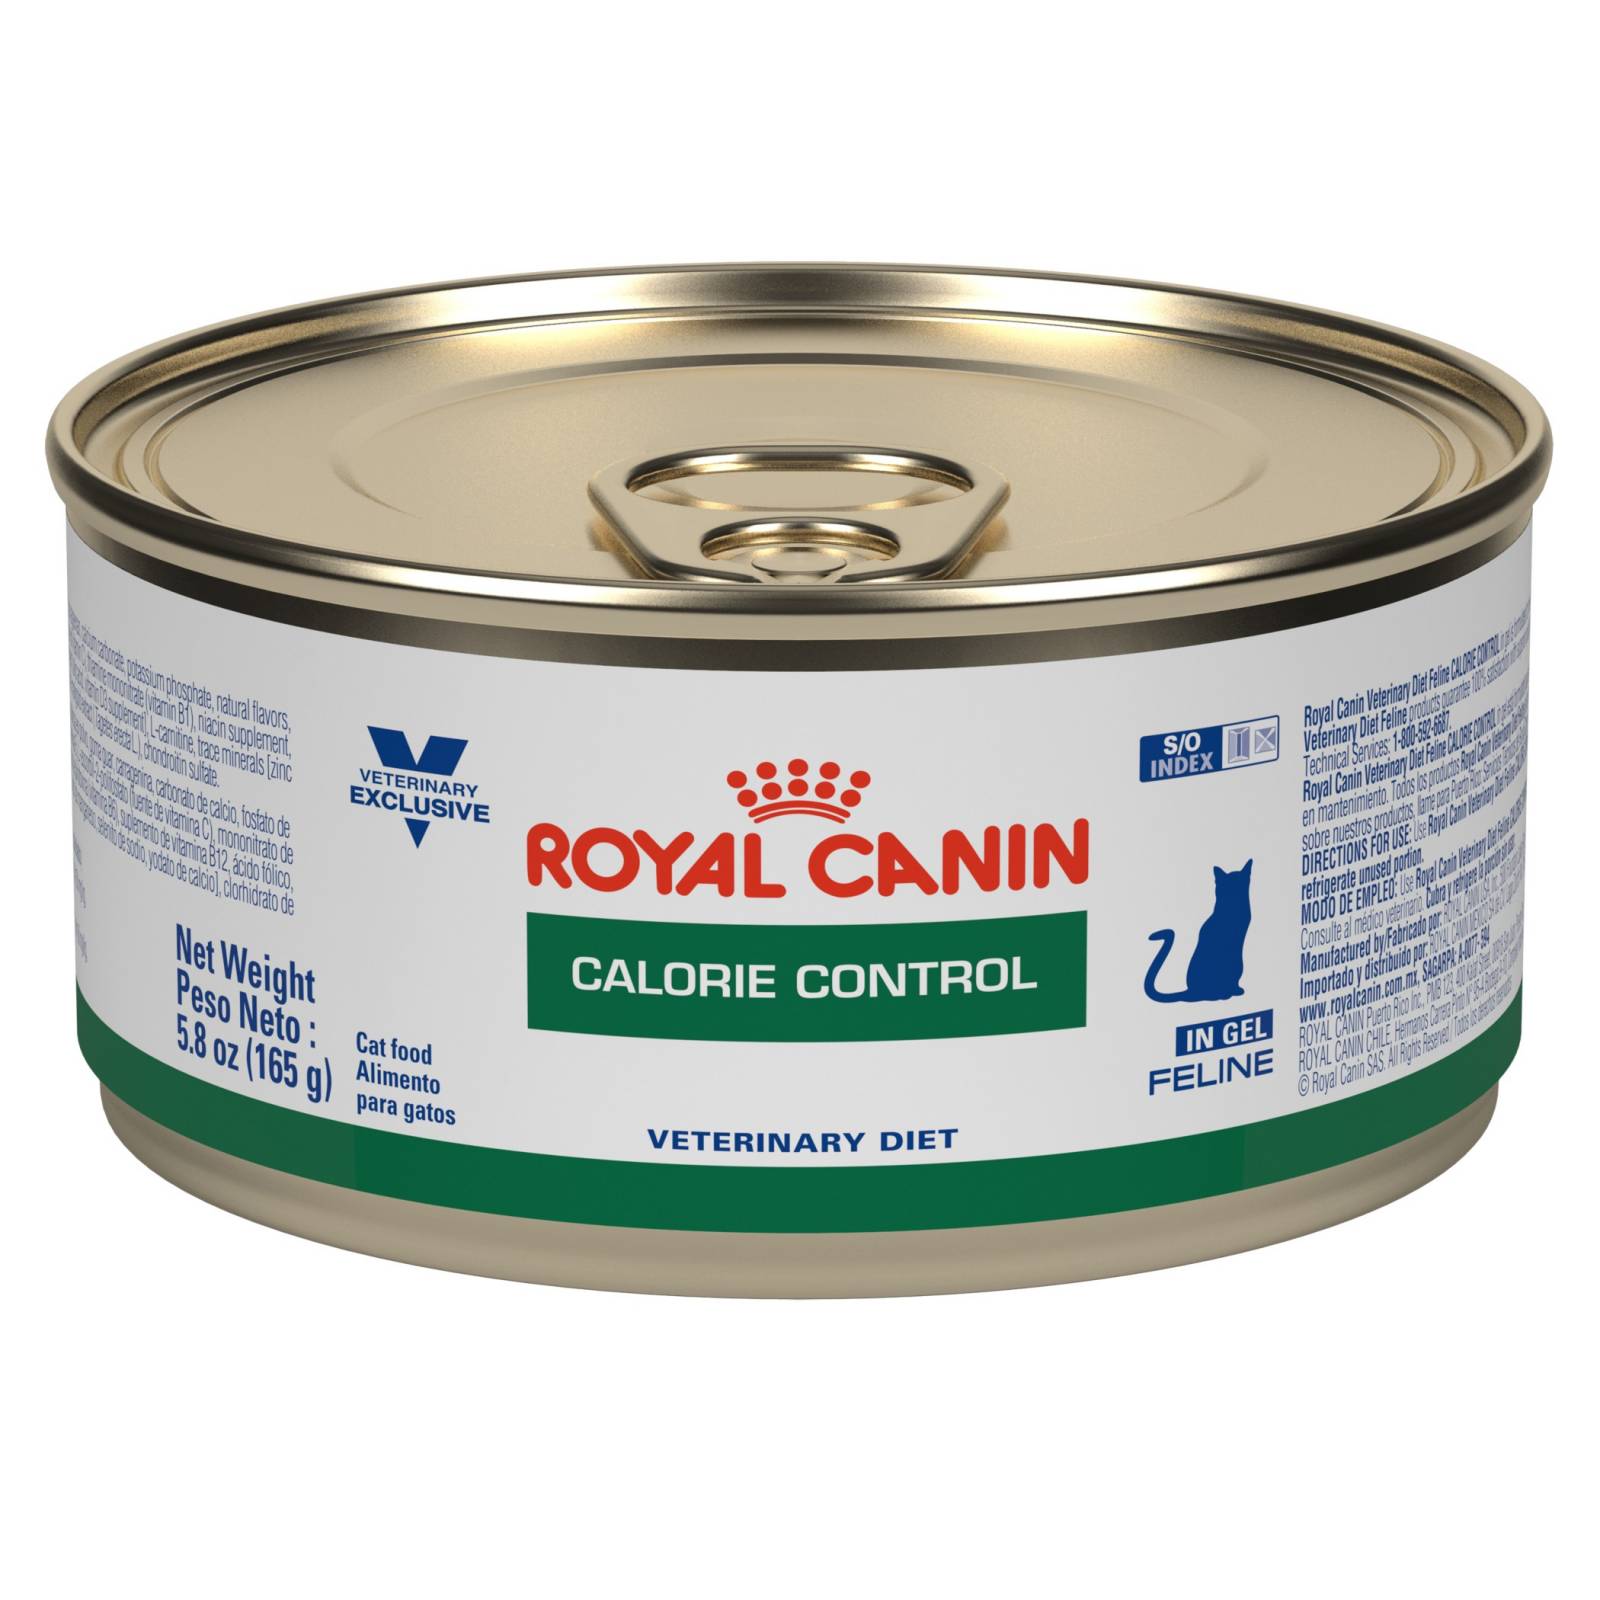 ROYAL CANIN LATA CALORIE CONTROL FELINE 0.165gr (24 pzs)